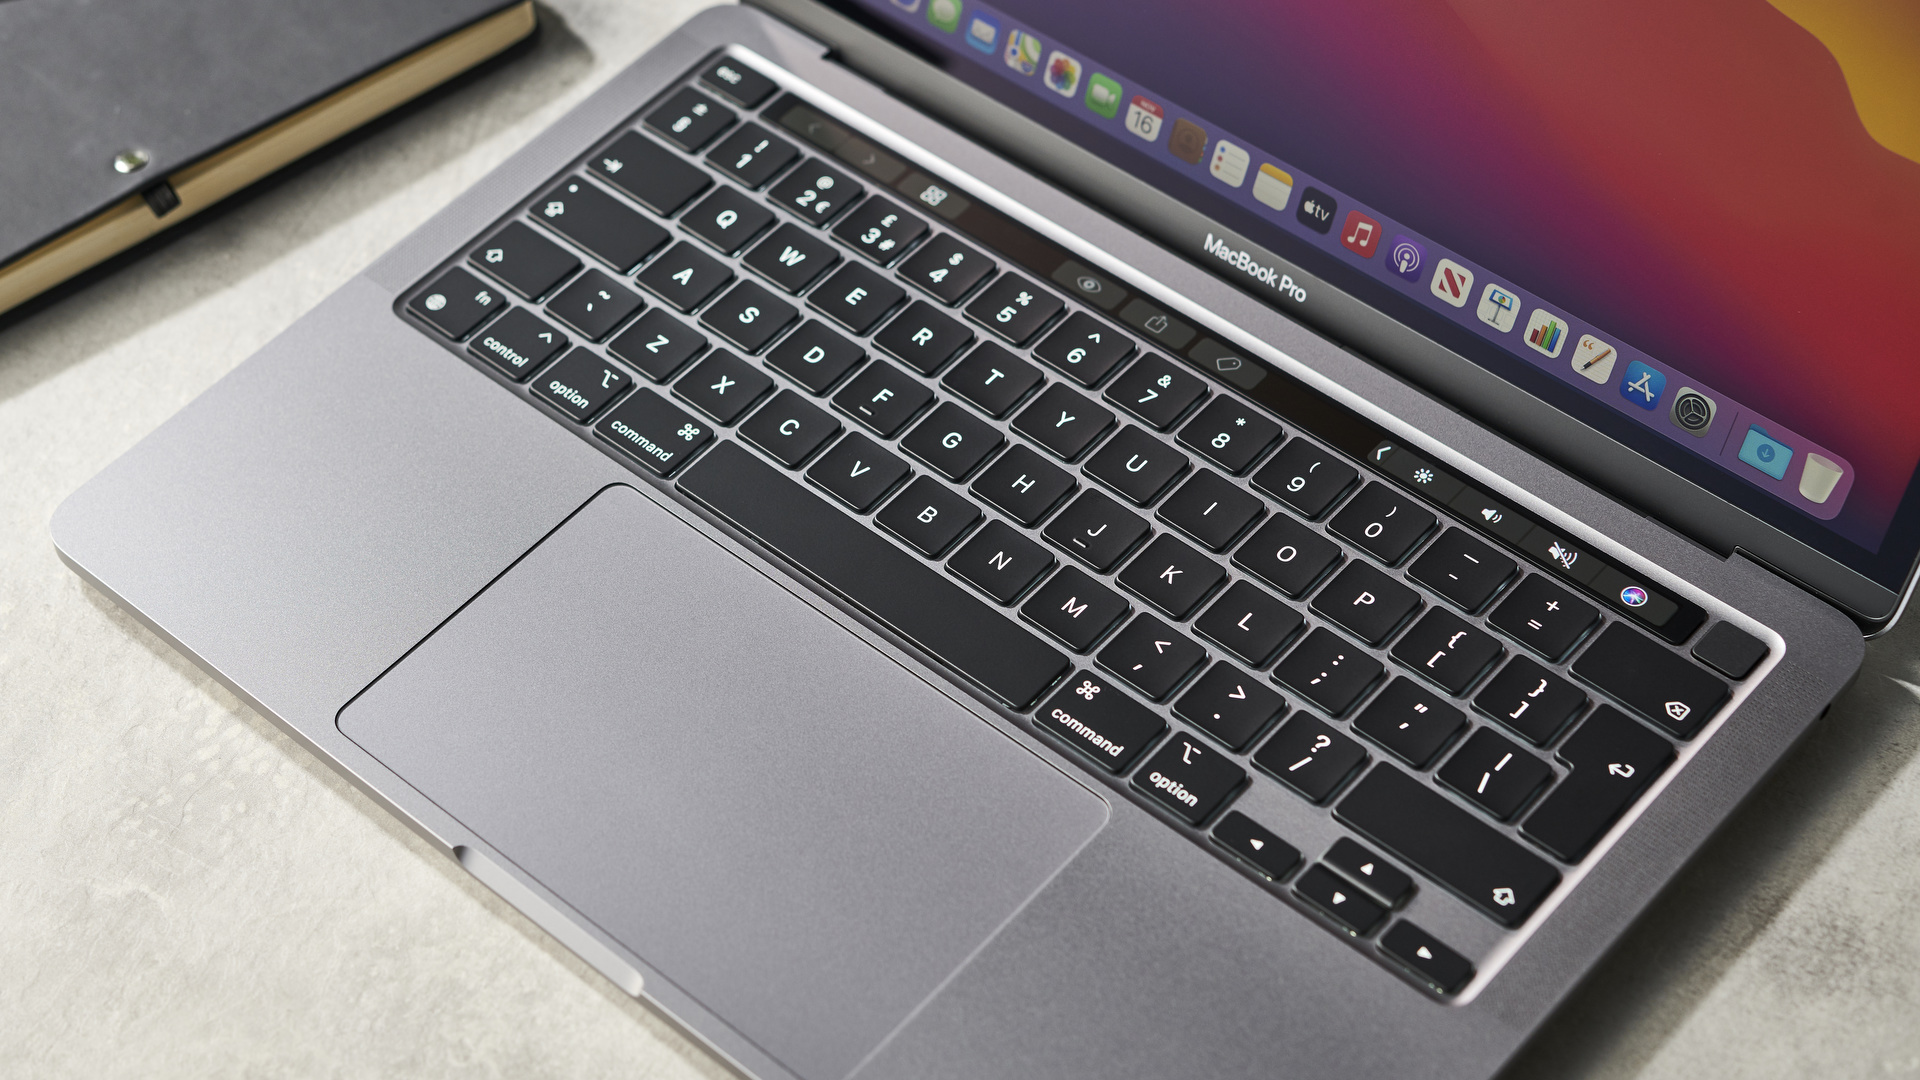 Hands on: Apple MacBook Pro 13-inch (M1, 2020) review - TECHTELEGRAPH